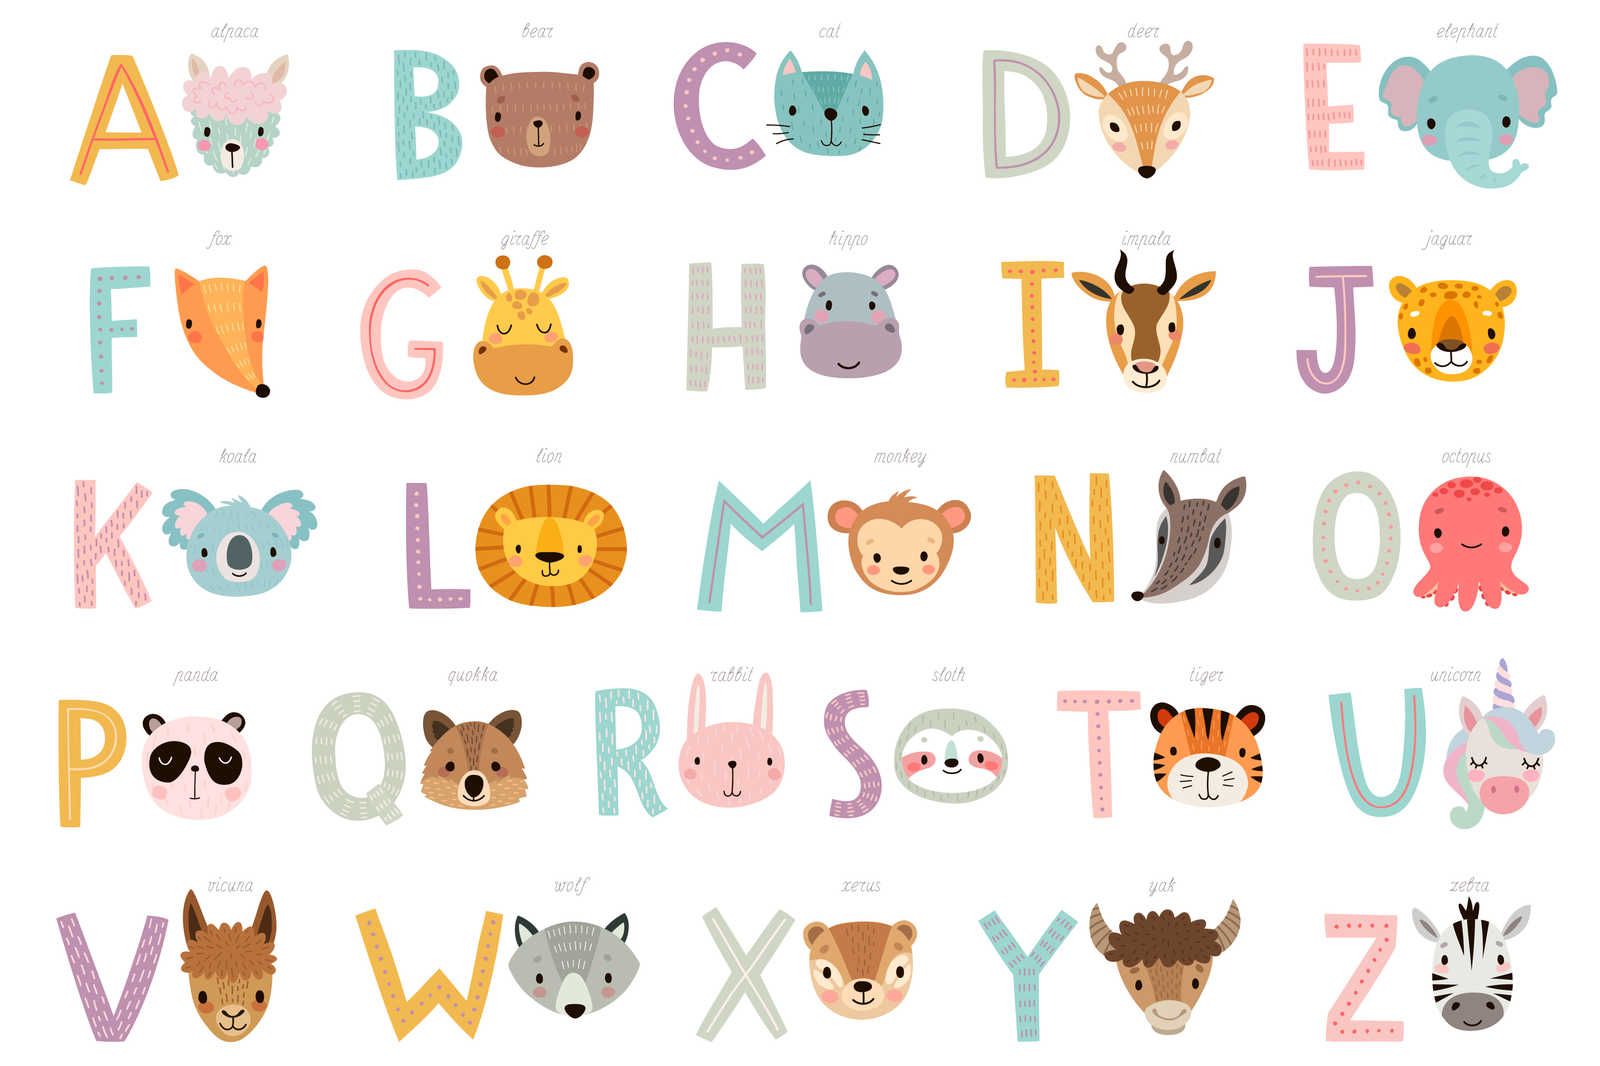             Toile ABC avec animaux et noms d'animaux - 90 cm x 60 cm
        